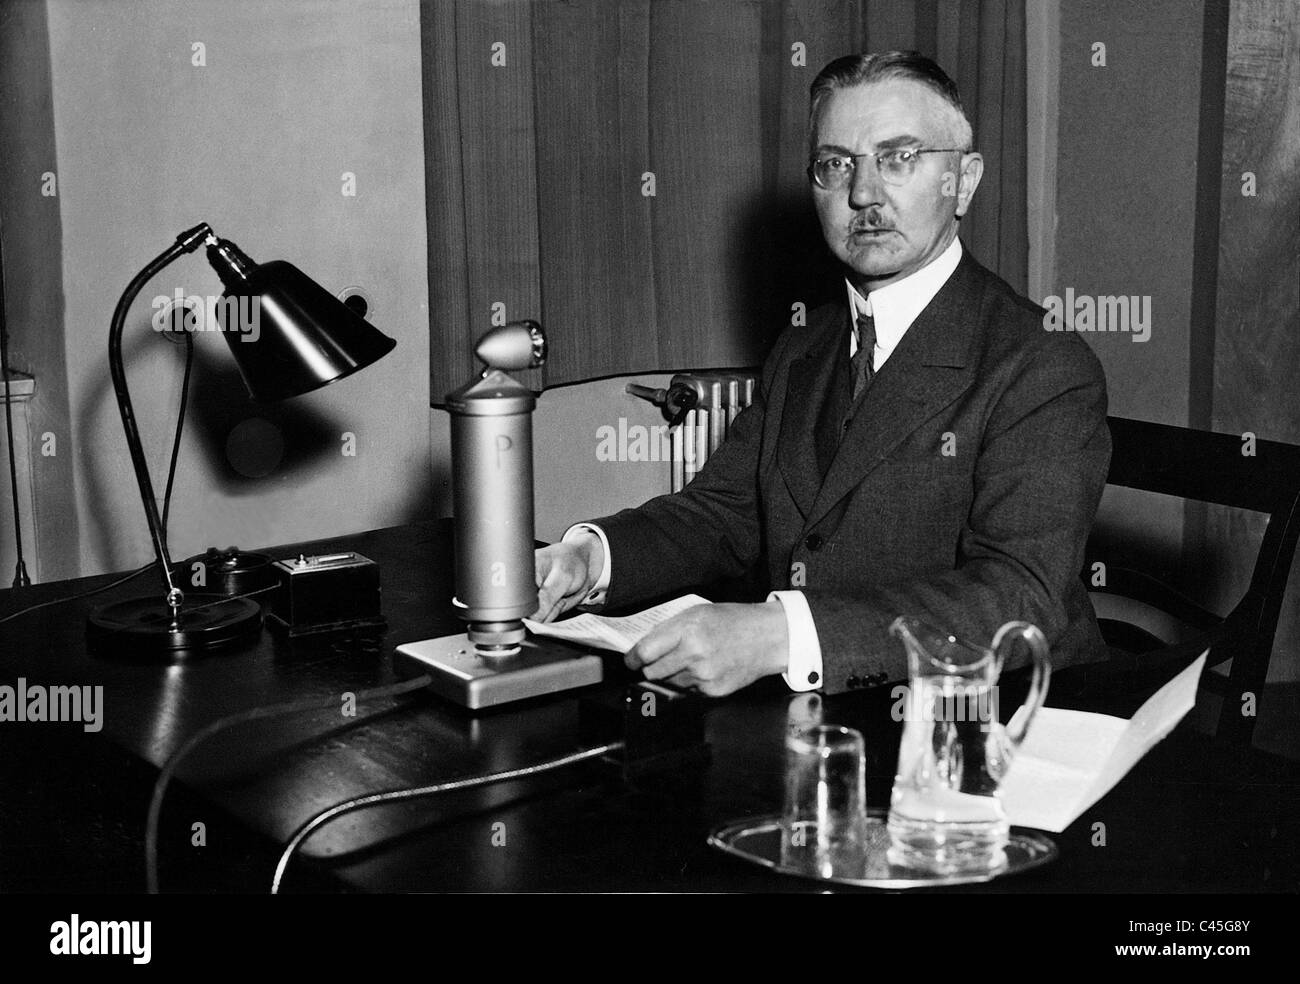 Radio address by Hjalmar Schacht, 1934 Stock Photo - Alamy